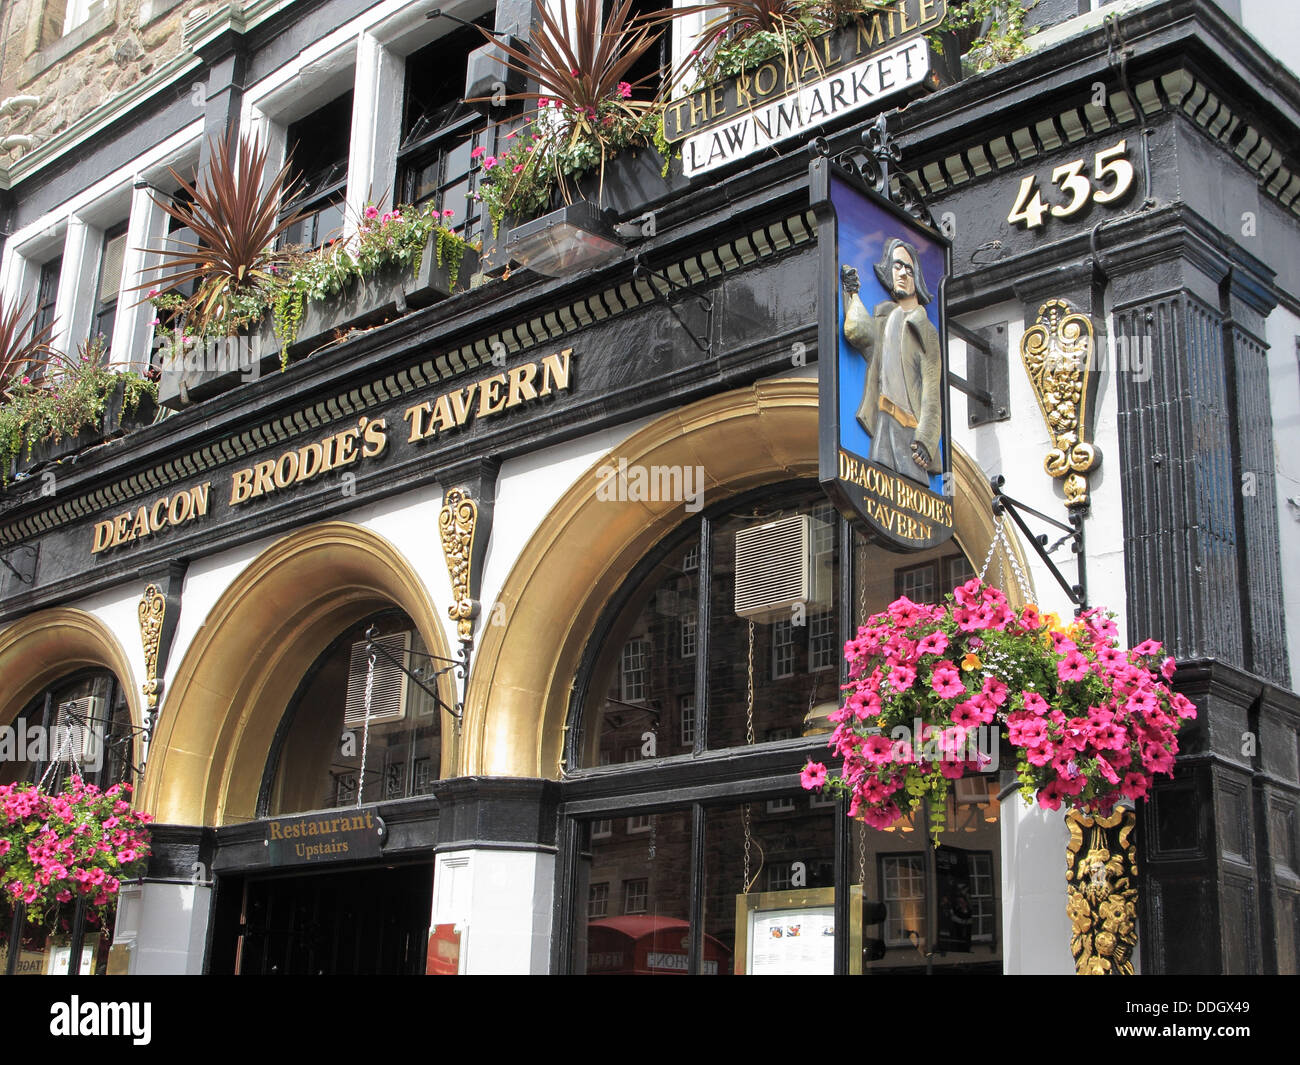 Deacon Brodie's Tavern, Lawnmarket, The Royal Mile, Édimbourg, Écosse, Royaume-Uni Banque D'Images